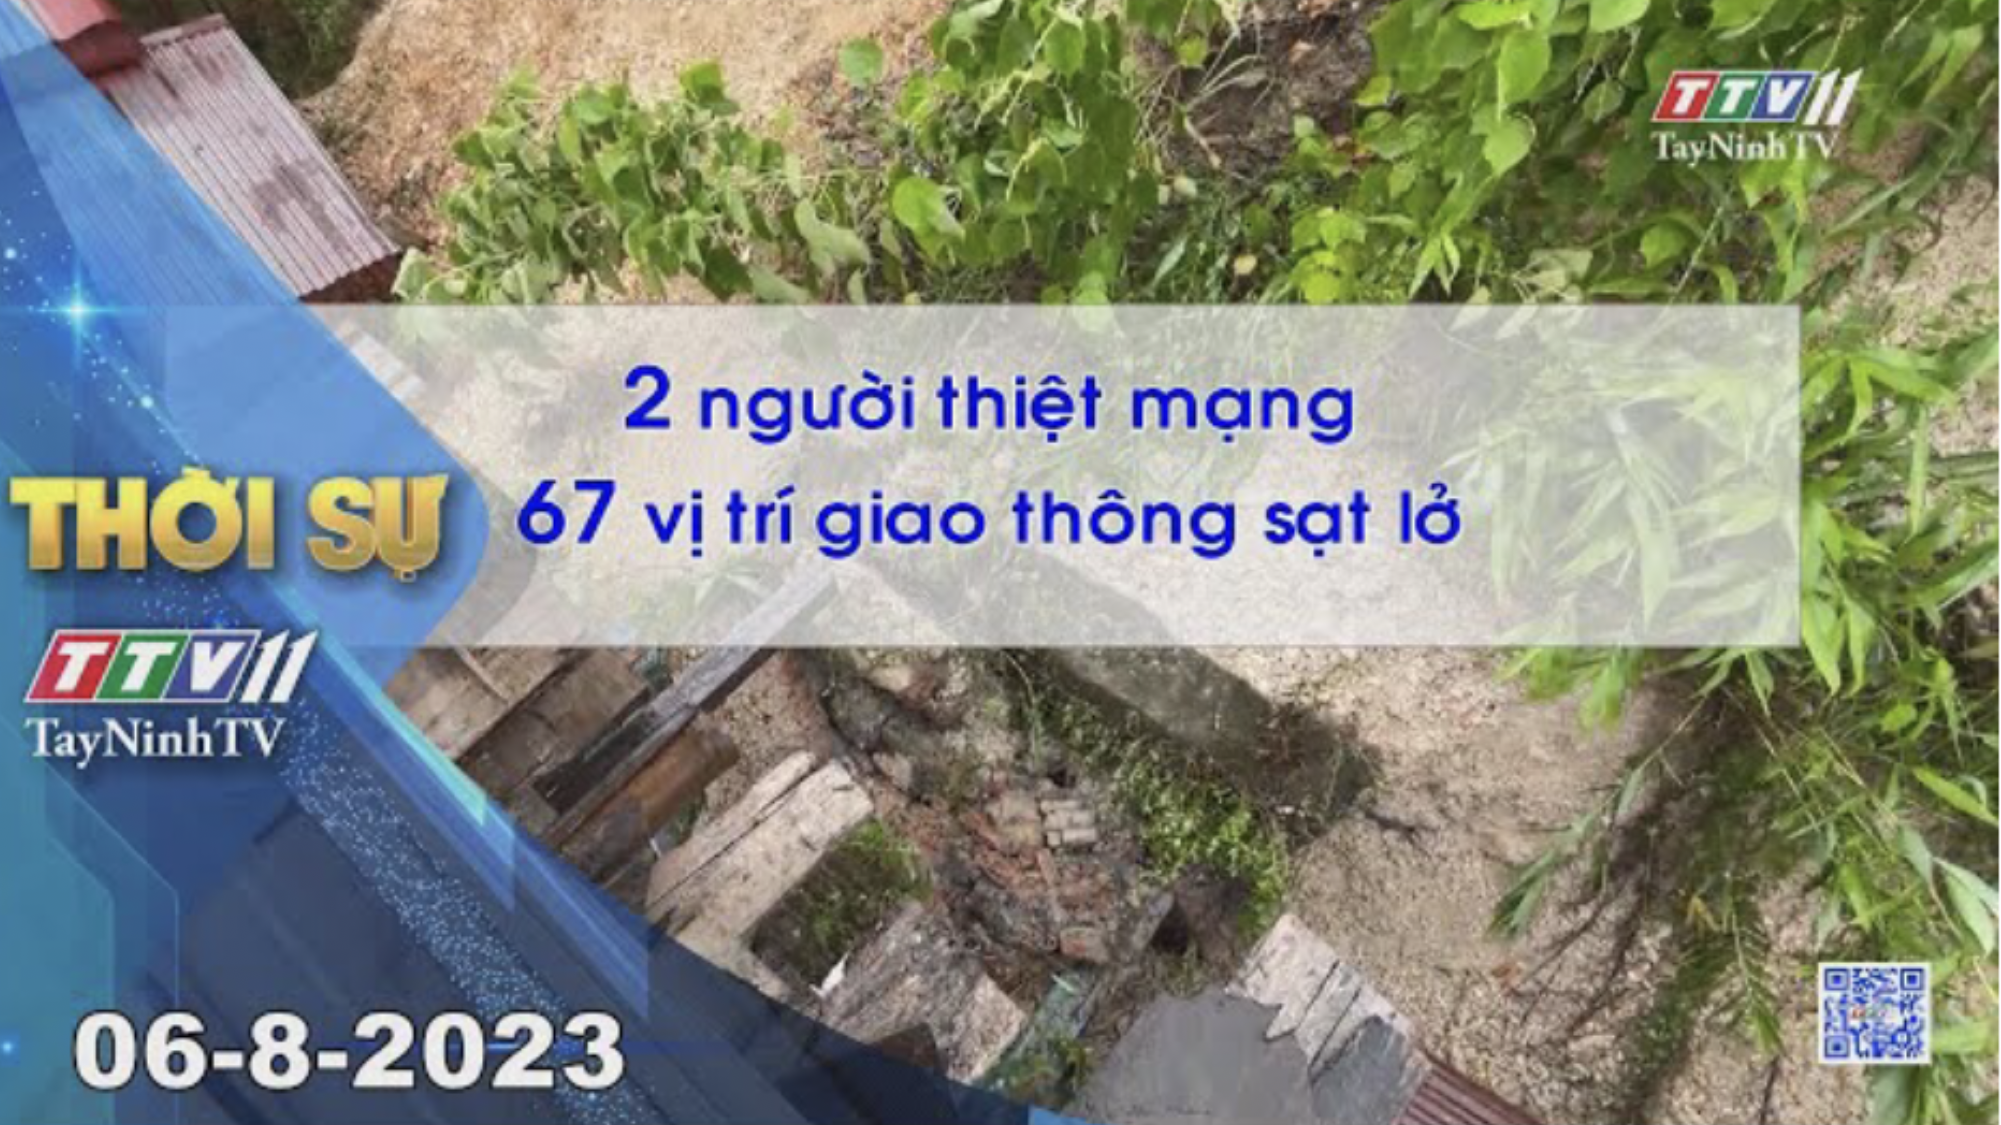 Thời sự Tây Ninh 06-8-2023 | Tin tức hôm nay | TayNinhTV